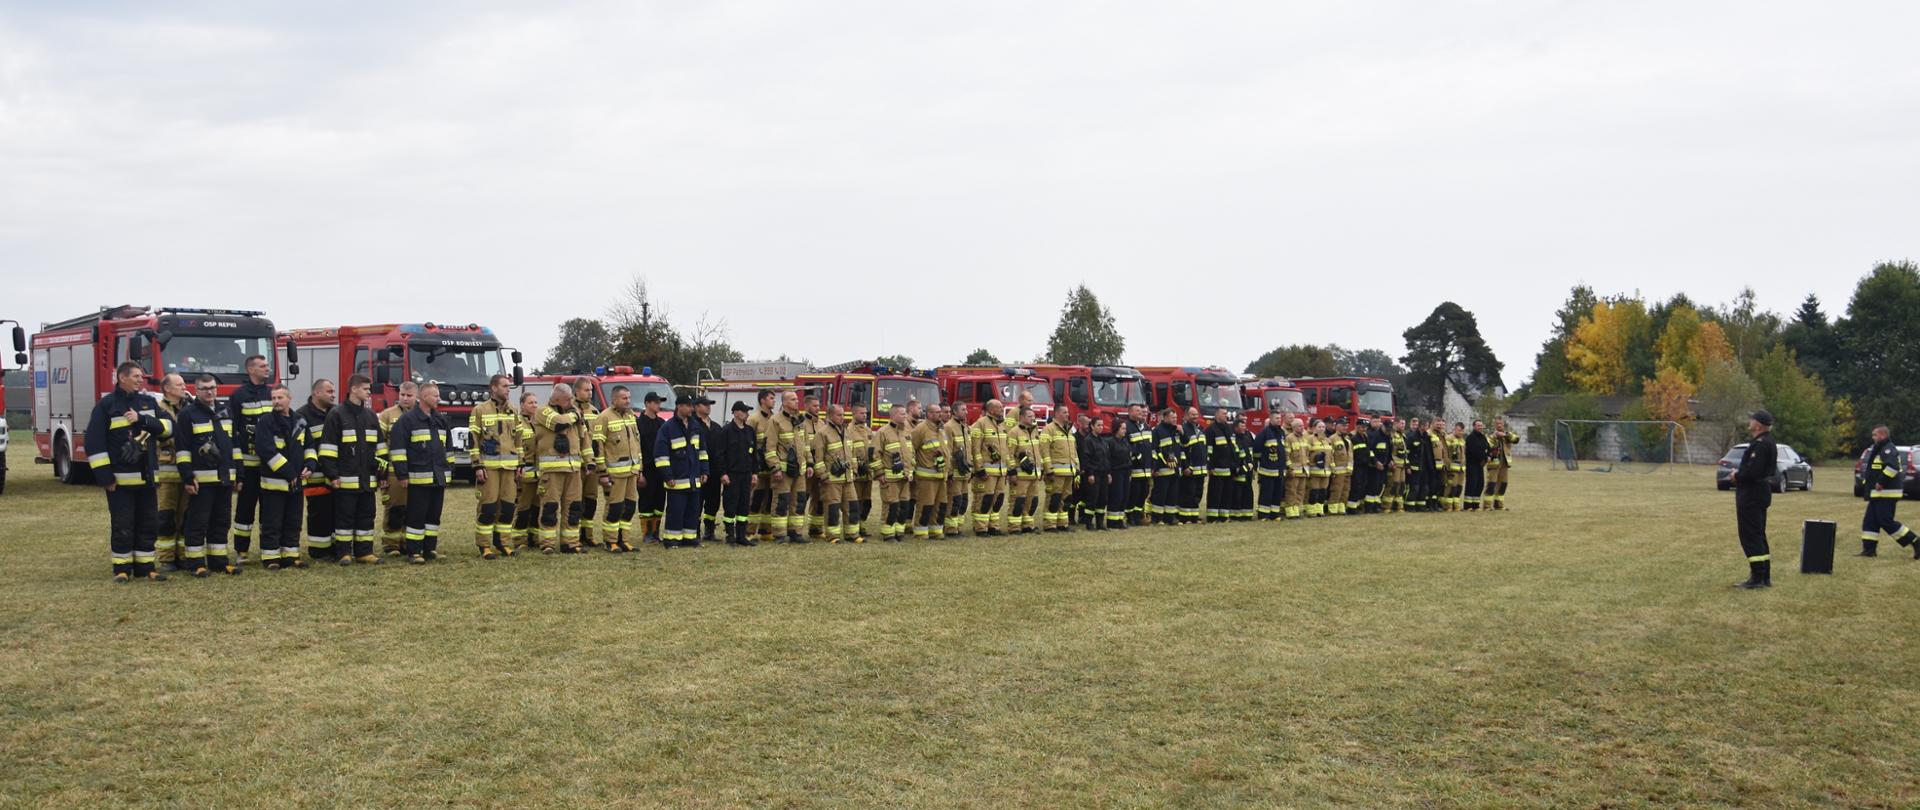 Ćwiczenia Straży Pożarnych w miejscowości Kowiesy - podczas zbiórki kończącej ćwiczenia trwa omówienie i podsumowanie prowadzonych działań